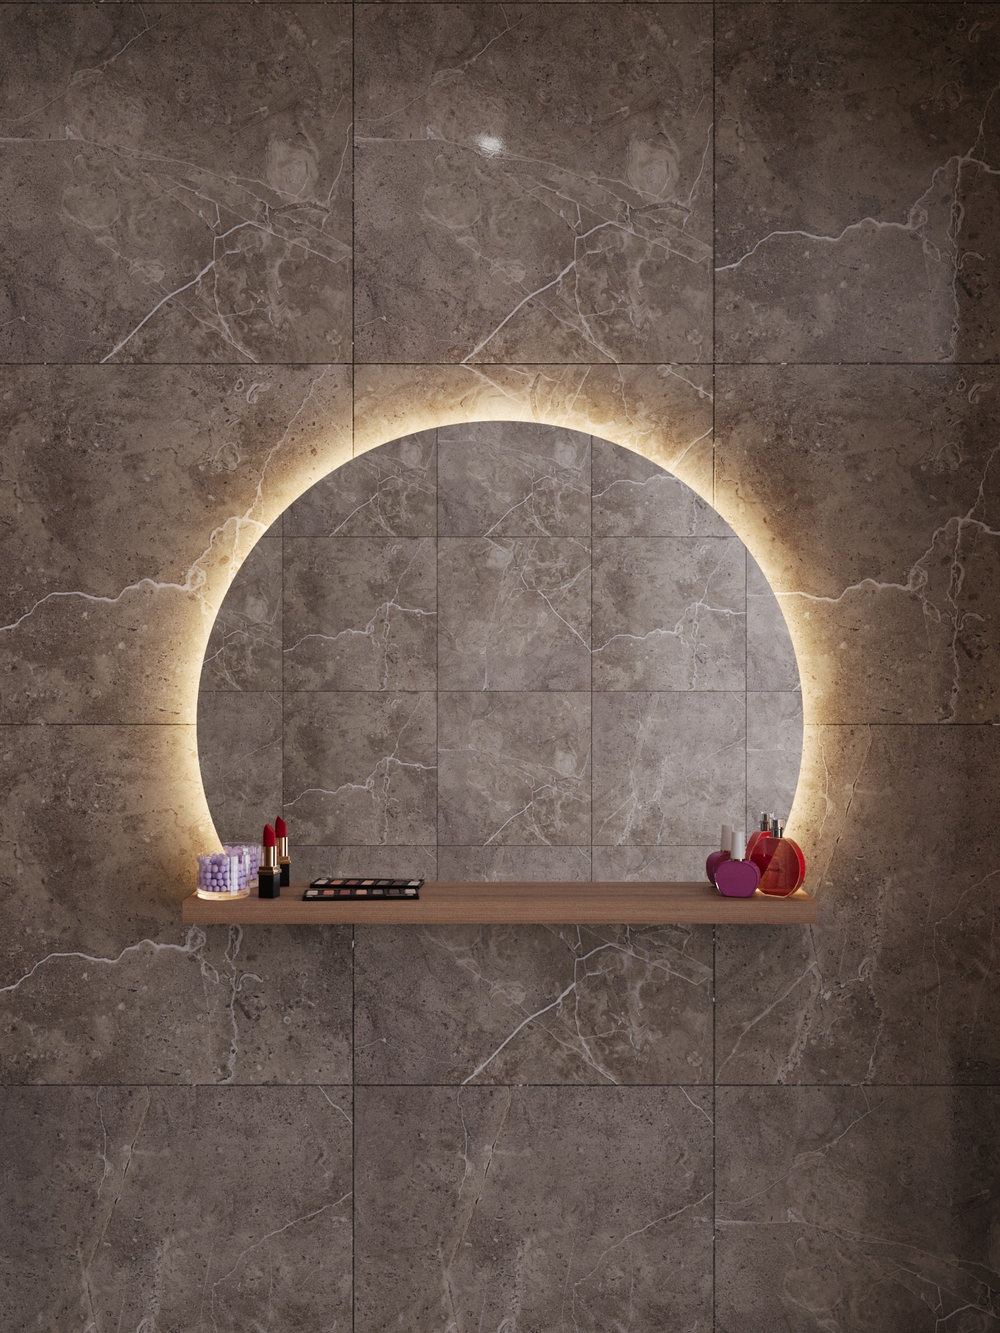 Круглое усеченное зеркало с полкой для ванной комнаты. LED подсветка